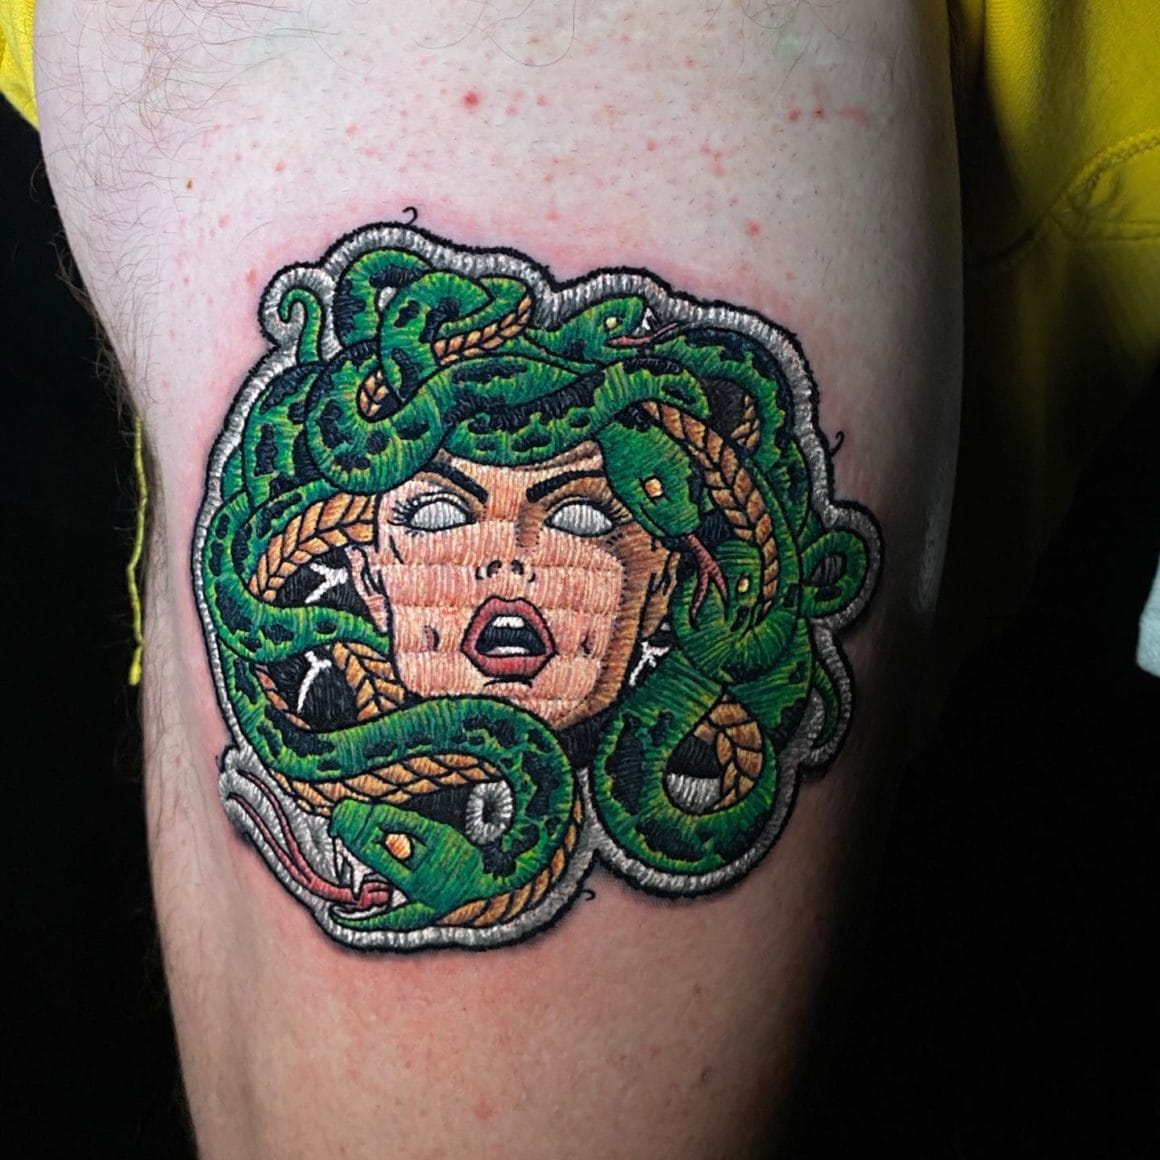 Ce patch représente la célèbre Médusa, connue pour ses cheveux de serpents et son regard capable de transformer quelqu'un en pierre.